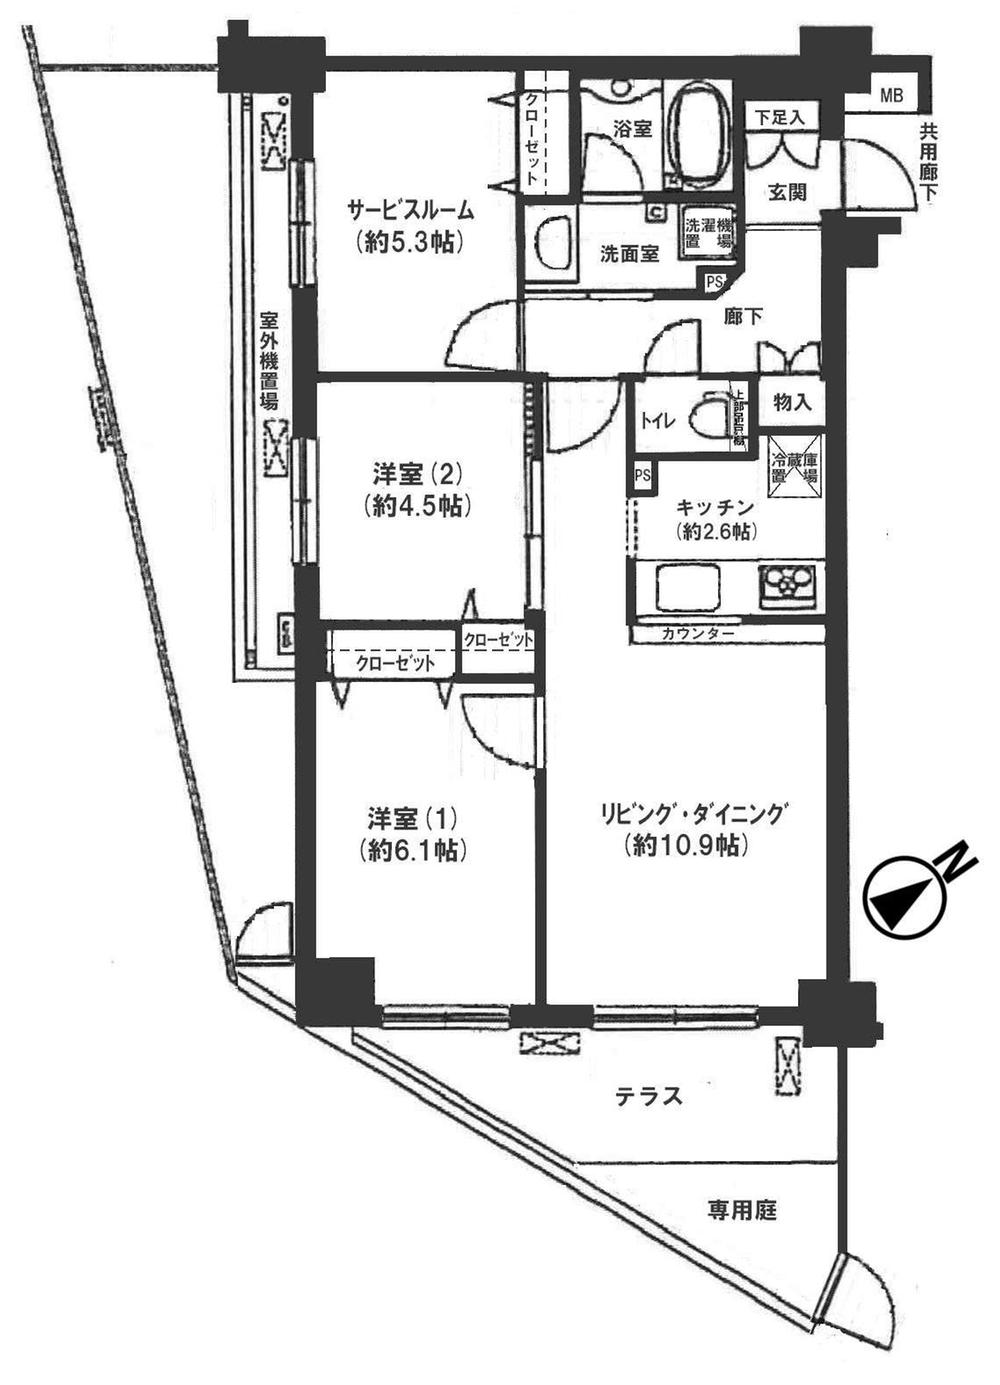 Floor plan. 2LDK + S (storeroom), Price 24,800,000 yen, Occupied area 63.72 sq m